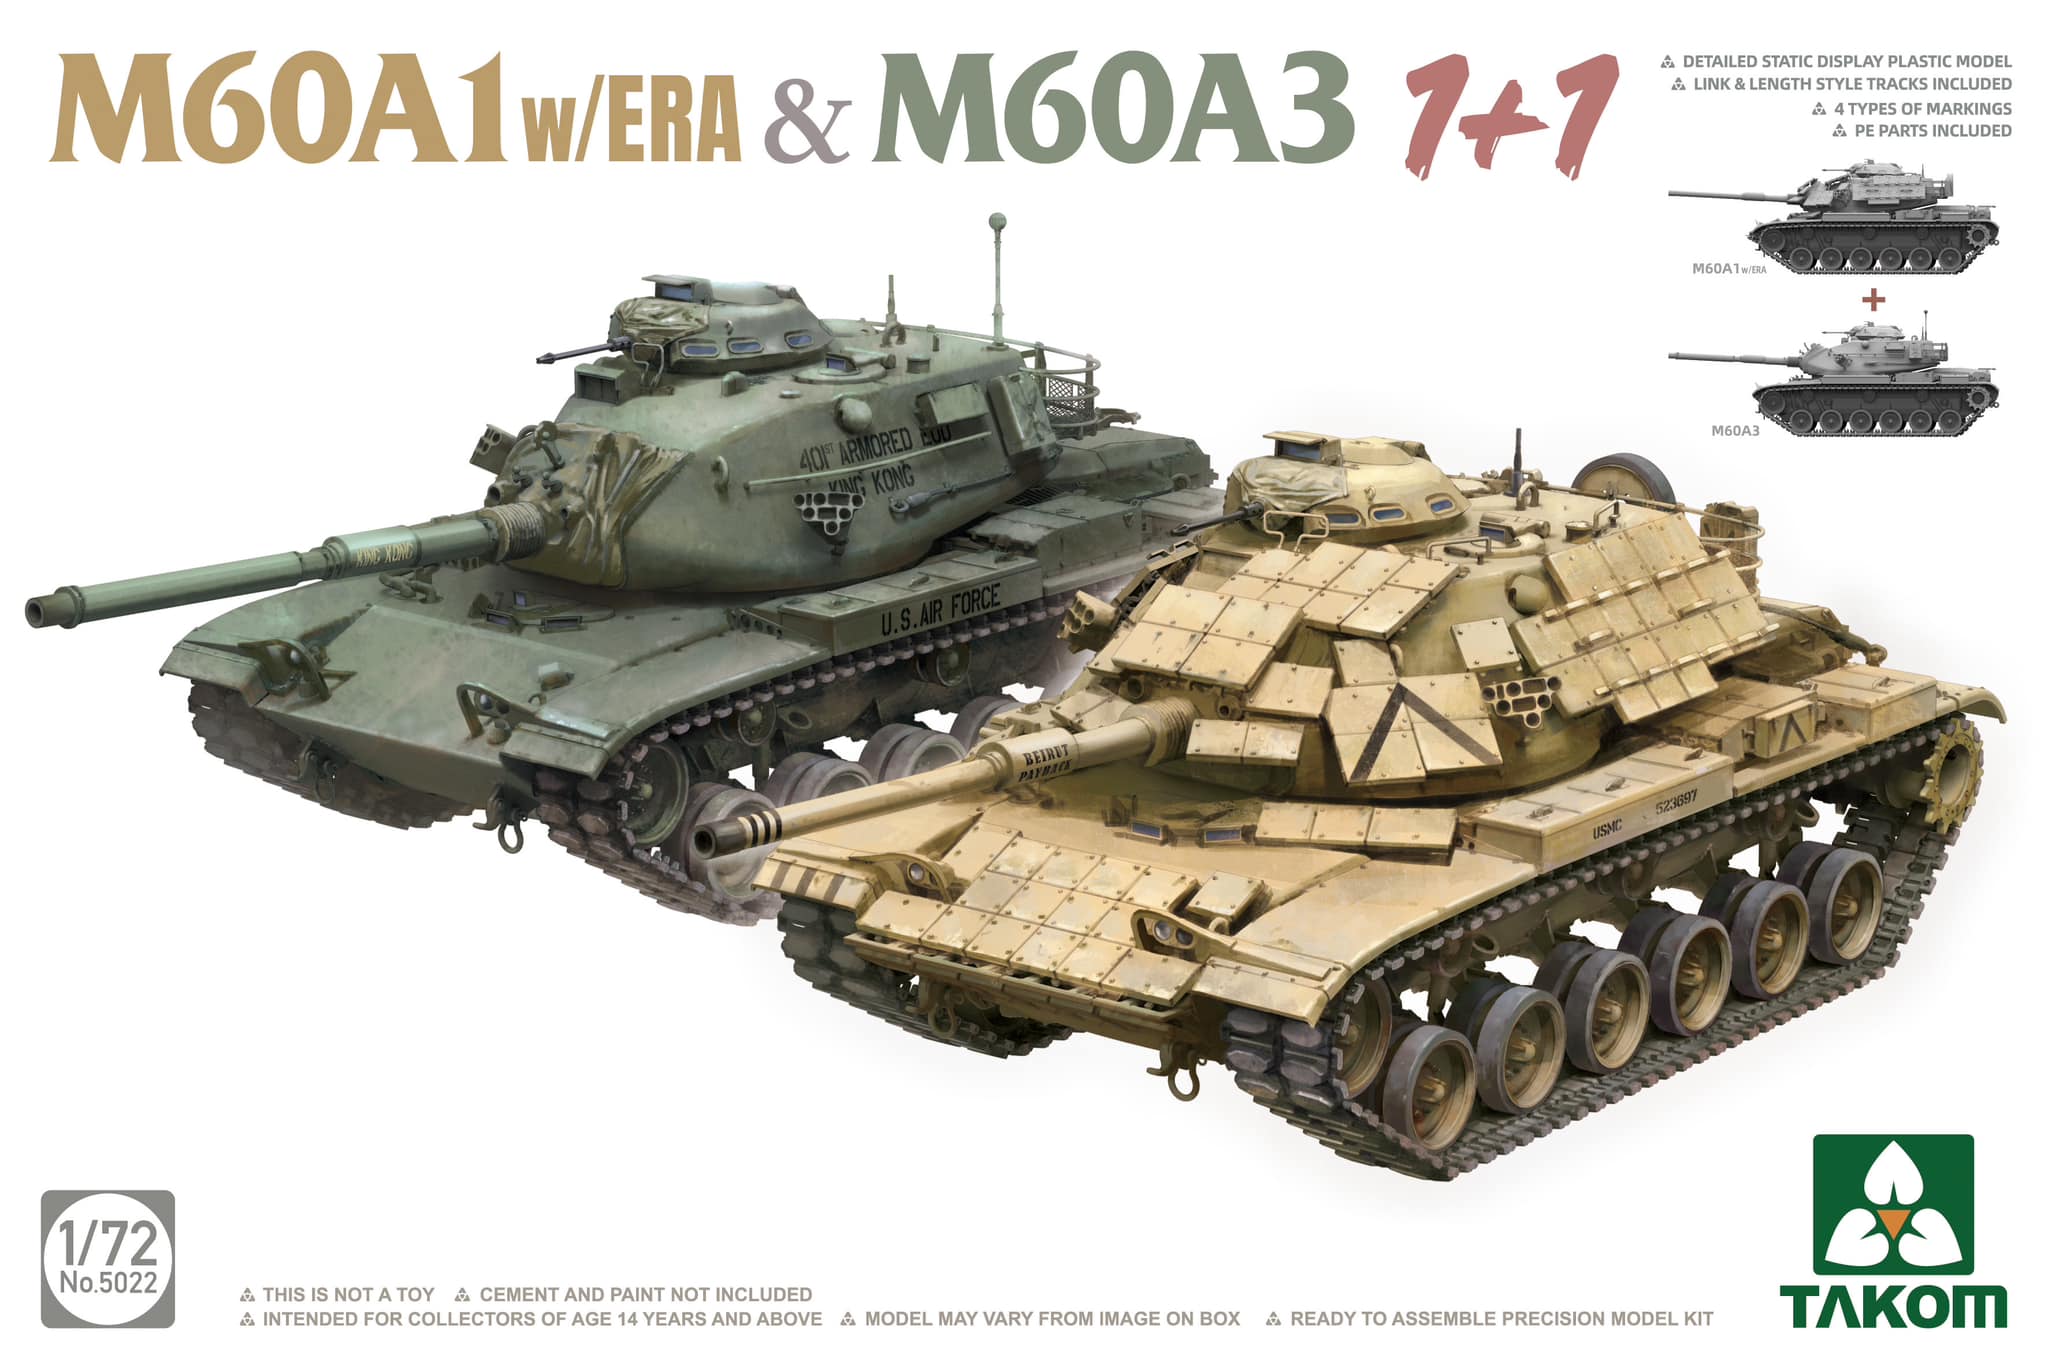 1/72 M60A1w/ERA & M60A3 1+1